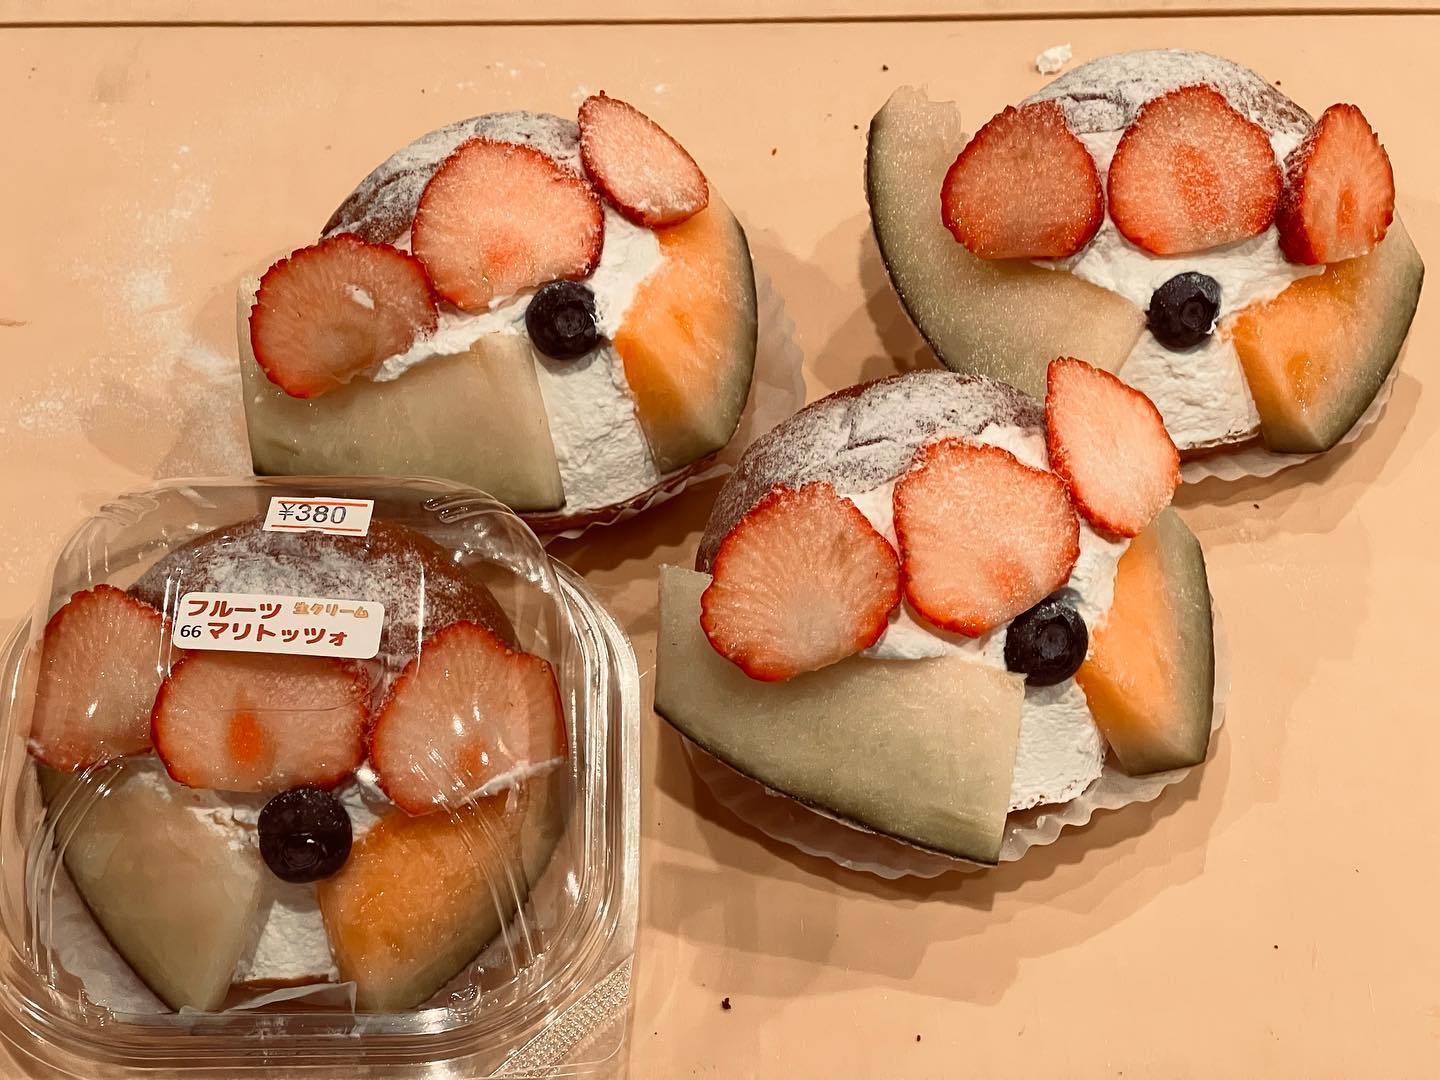 フルーツマリトッツォは
いちご、青メロン、赤メロン、ブルーベリー
北海道ソフトクリーム
一番人気は『たっぷりメロン』
極撰バナナがお買い得
尾花沢スイカ〜️